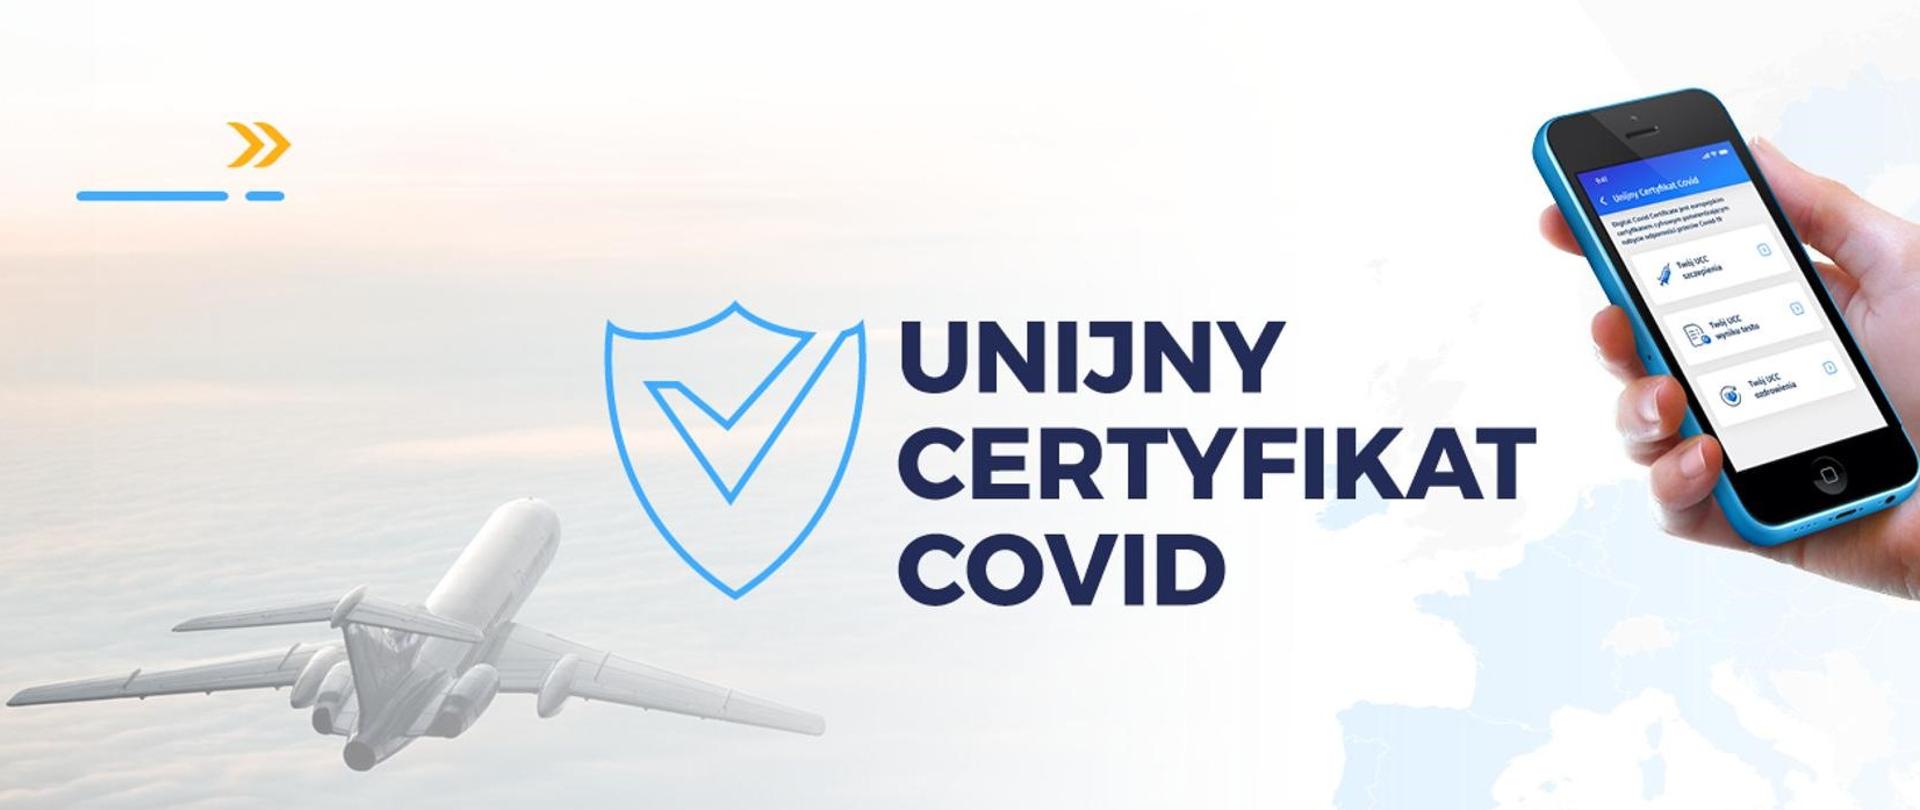 Unijny certyfikat Covid